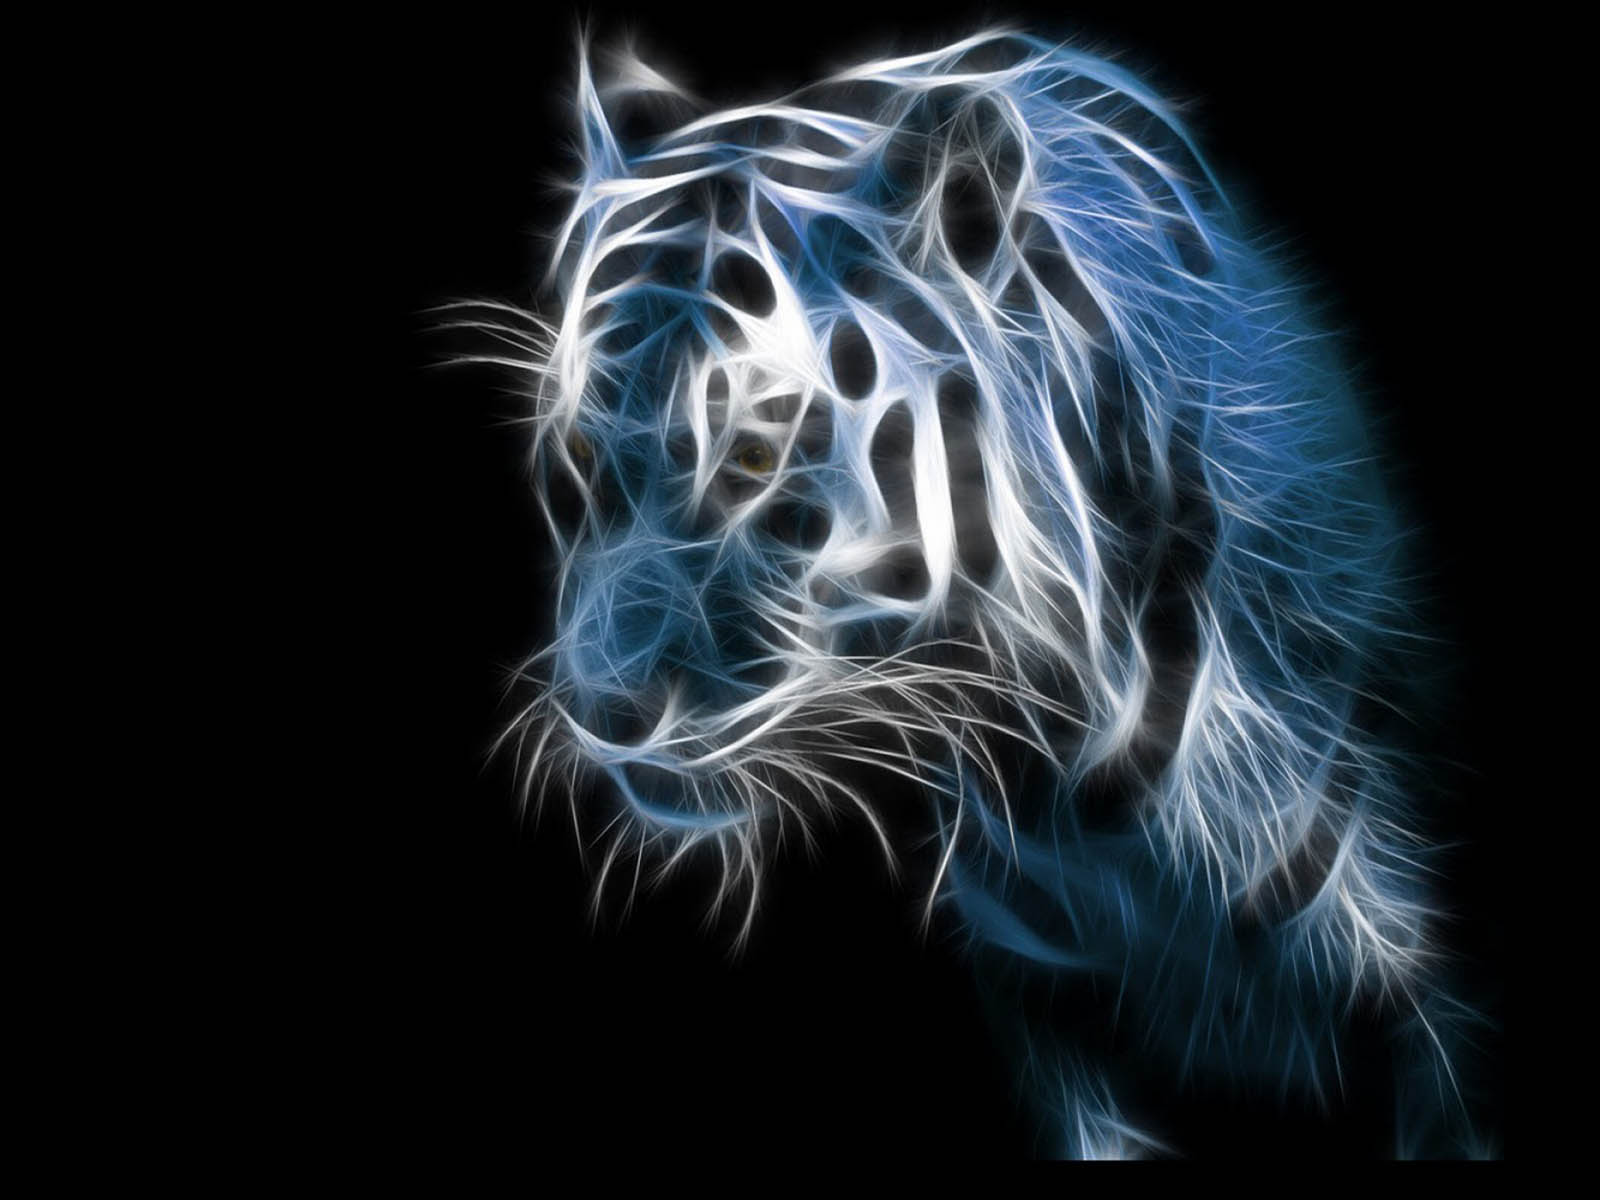 49+] 3D Tiger Wallpaper - WallpaperSafari